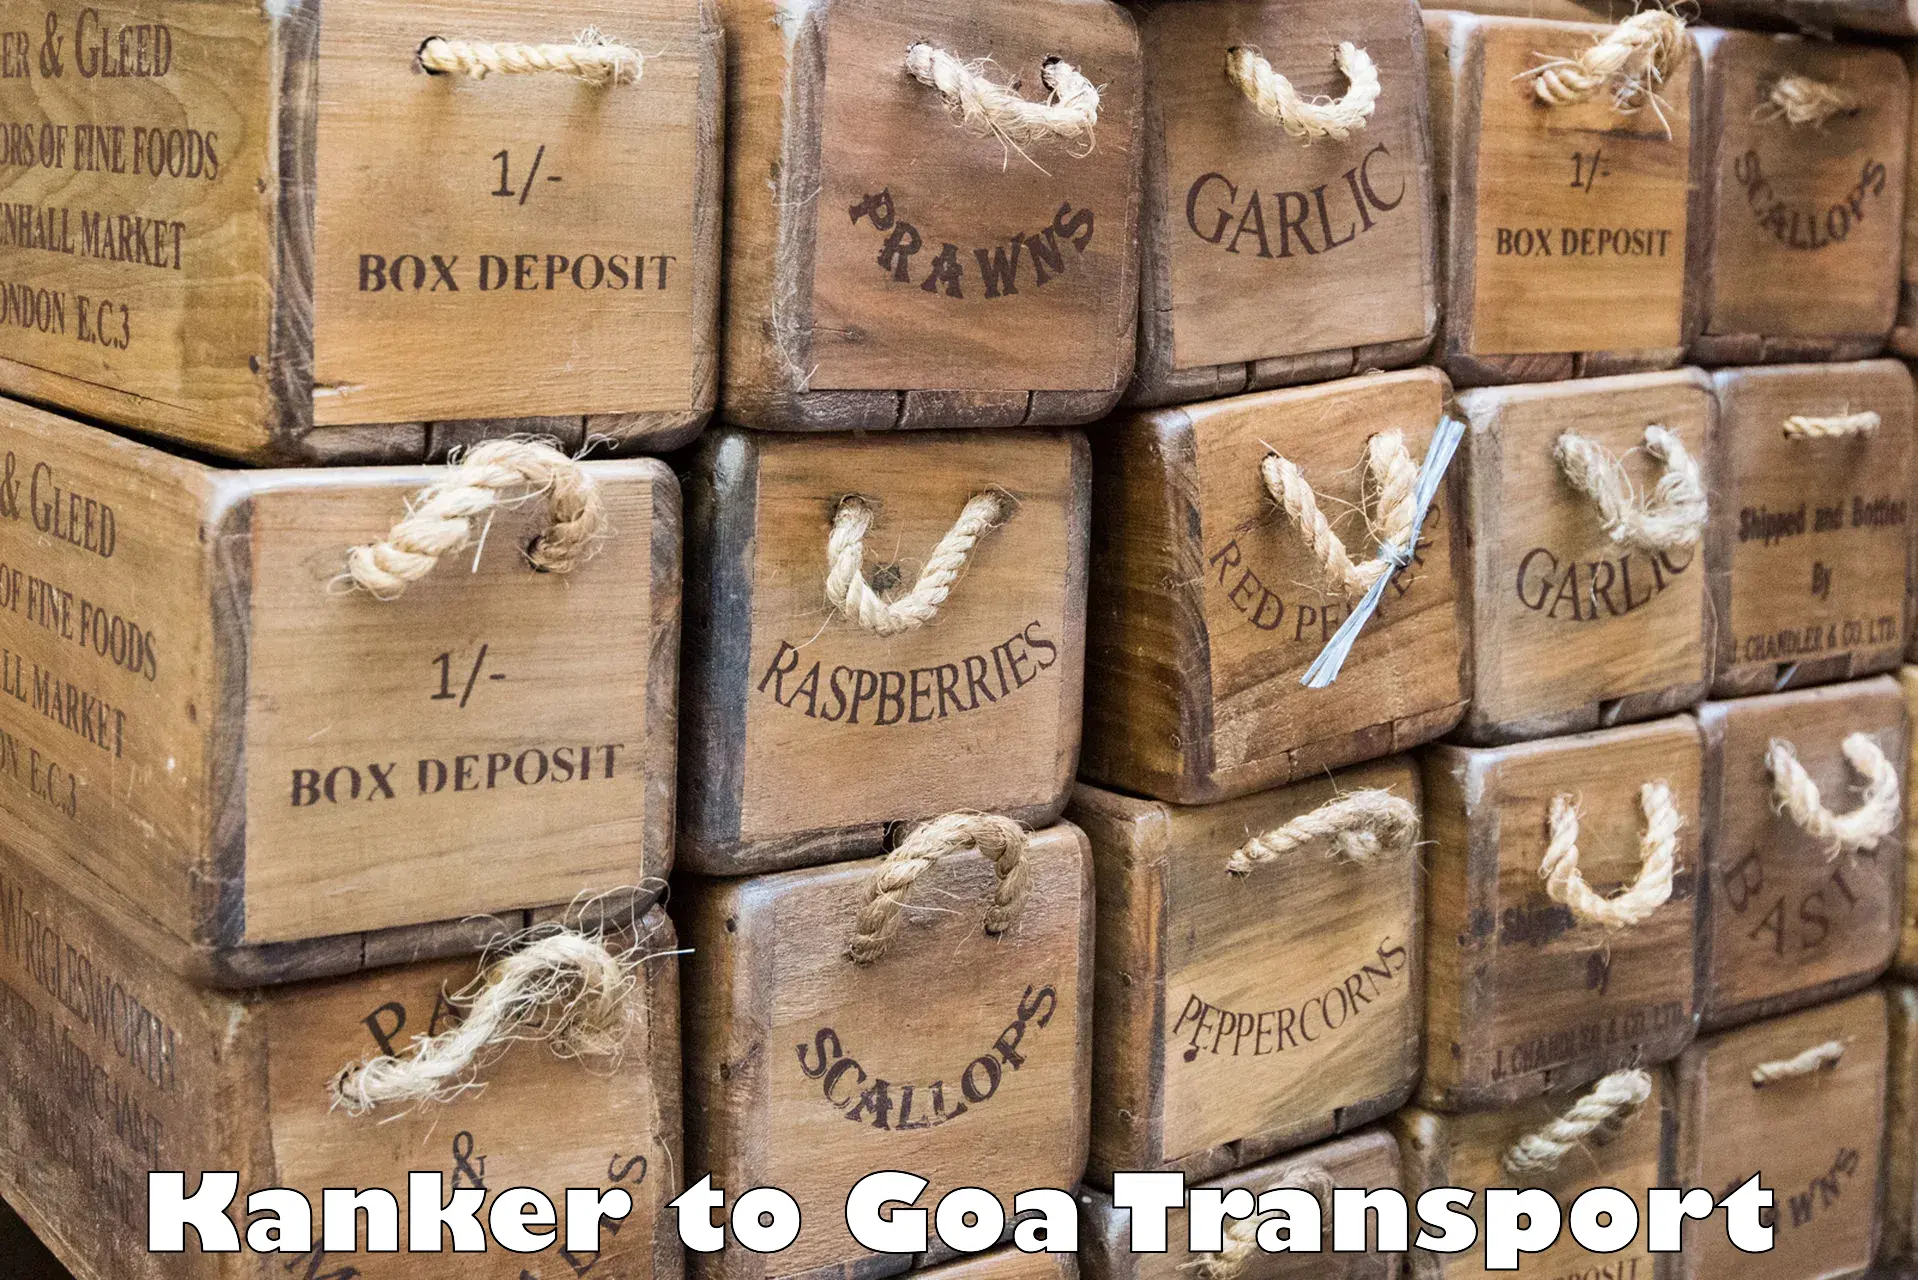 All India transport service Kanker to Vasco da Gama